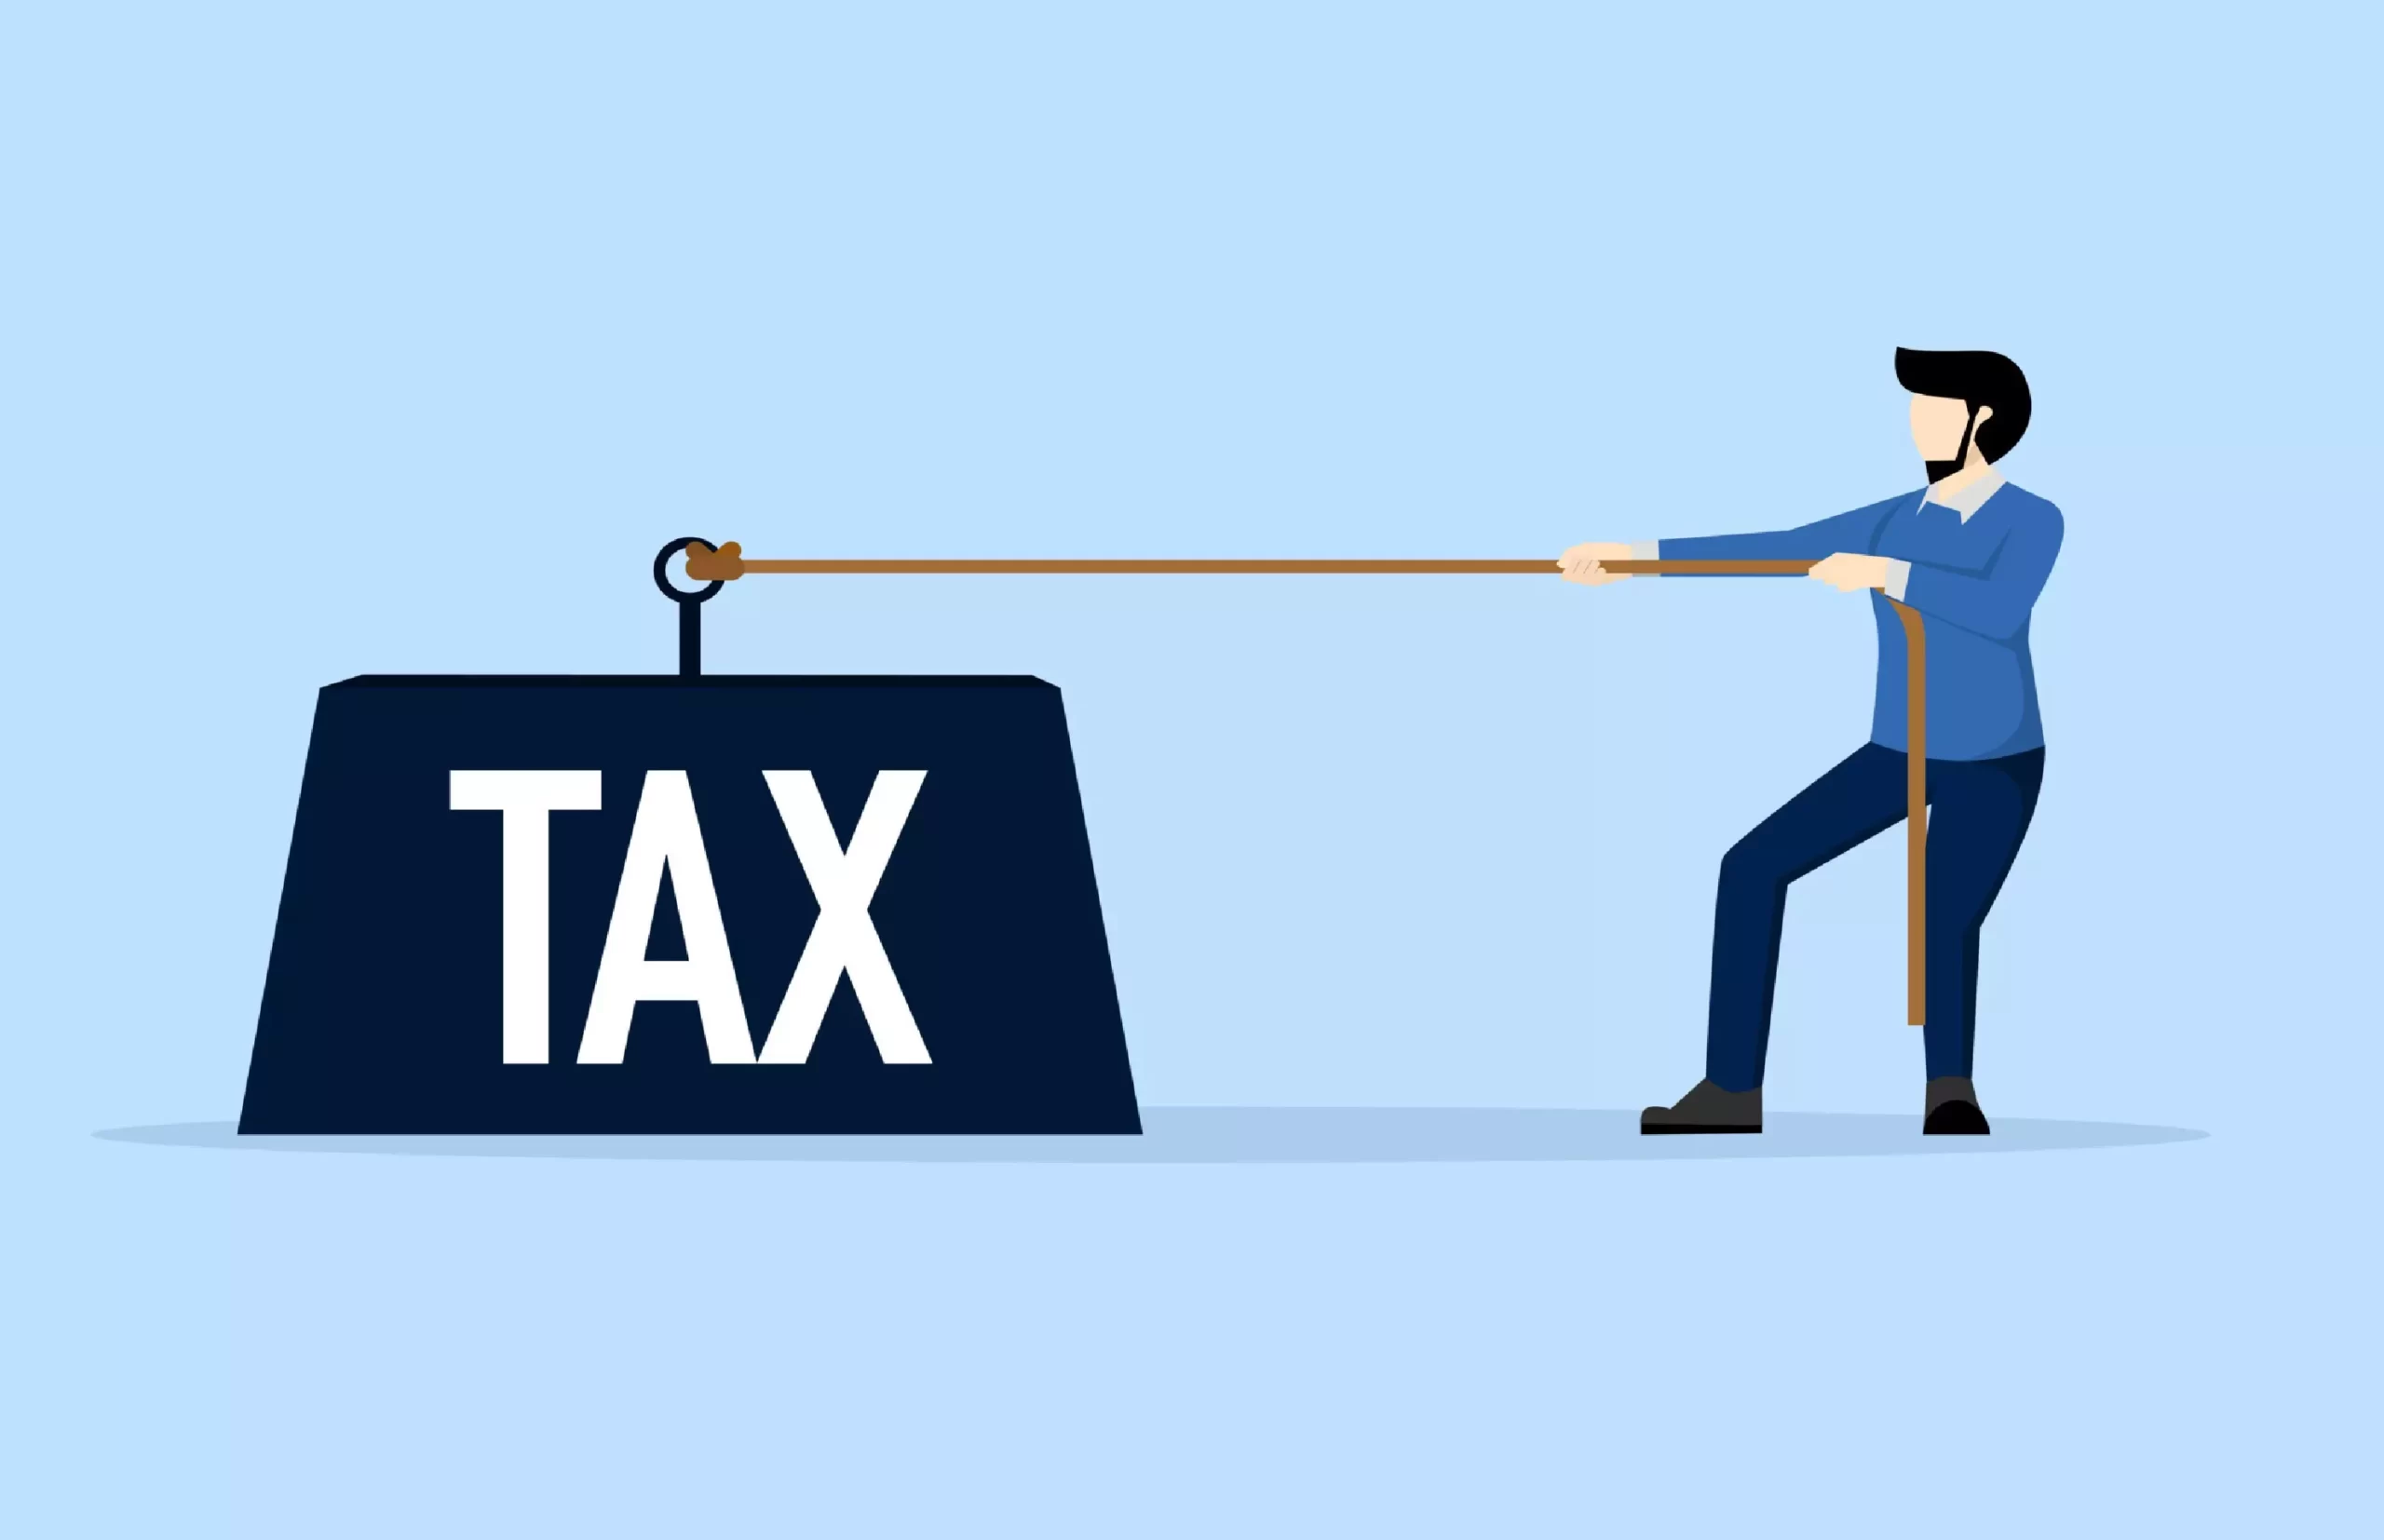 بار مالیاتی Tax Burden